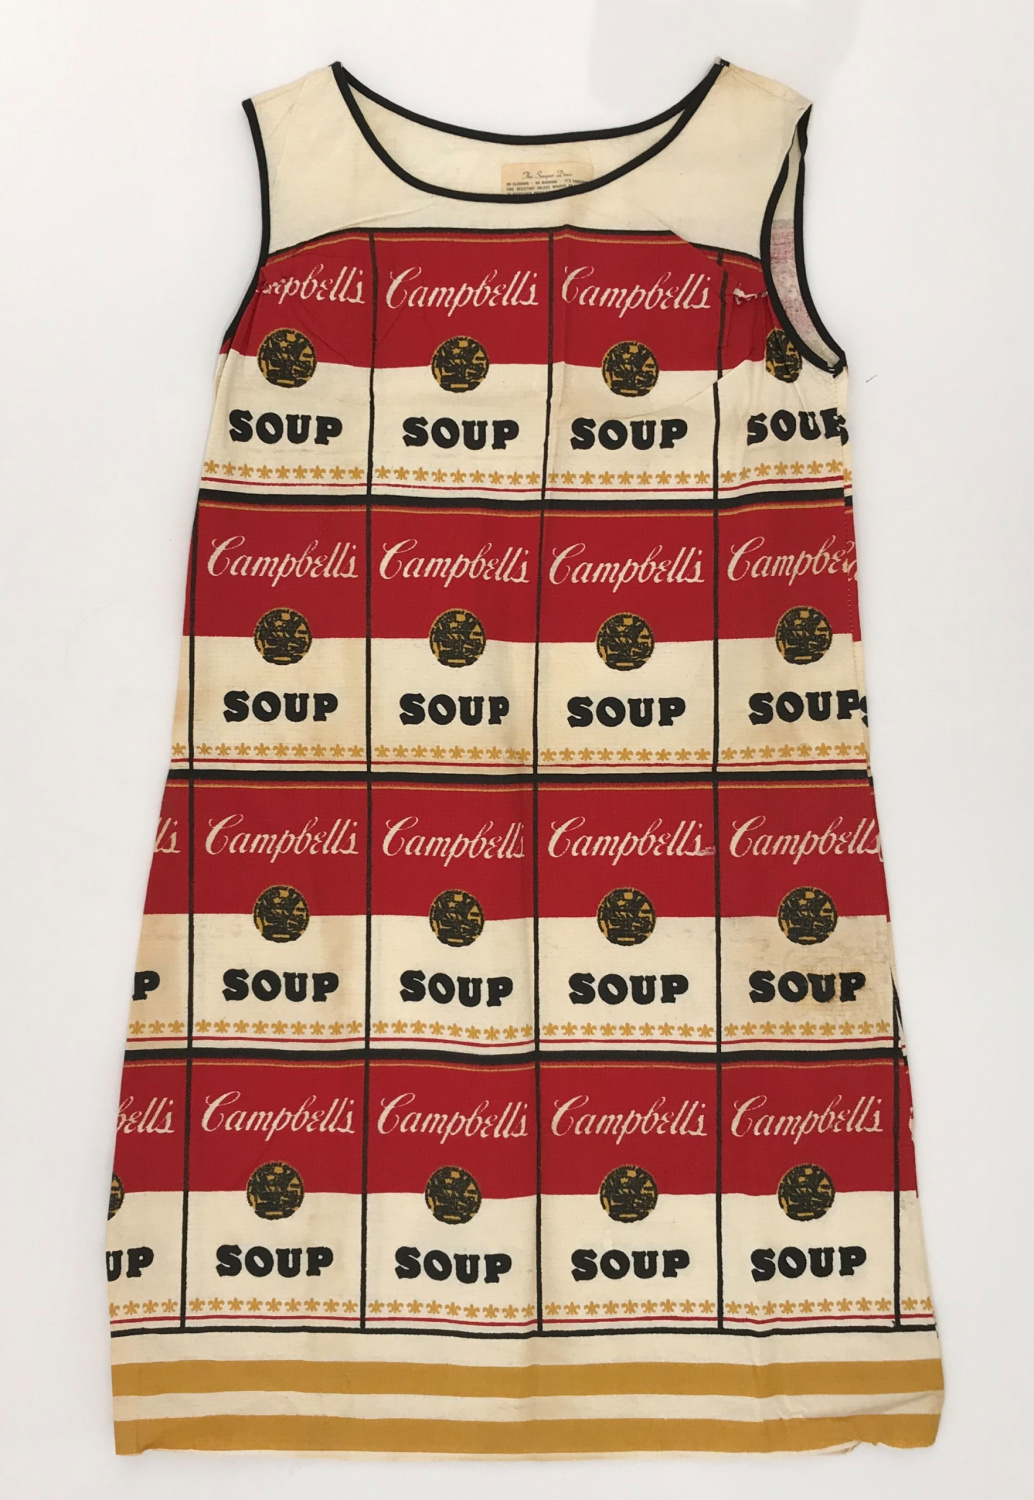 Andy Warhol - The souper dress - Kings Gallery - Fine art - International art - Jerusalem.